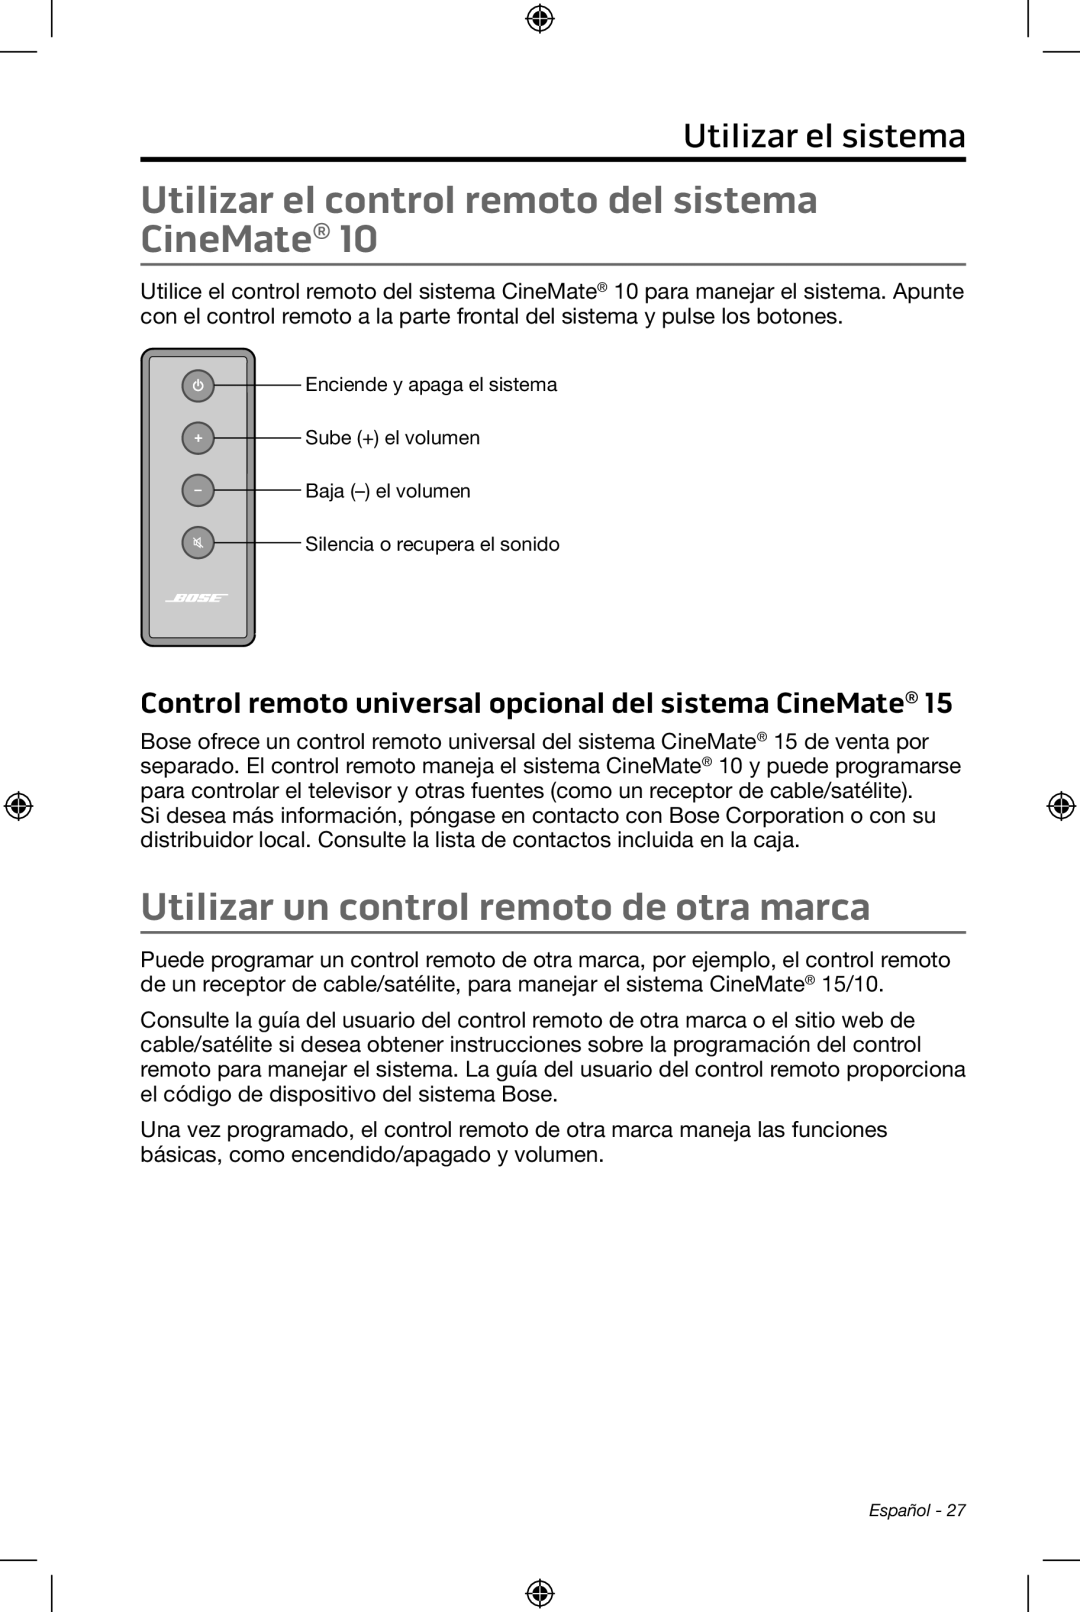 Bose CineMate 15/10 manual Utilizar el control remoto del sistema CineMate, Utilizar un control remoto de otra marca 